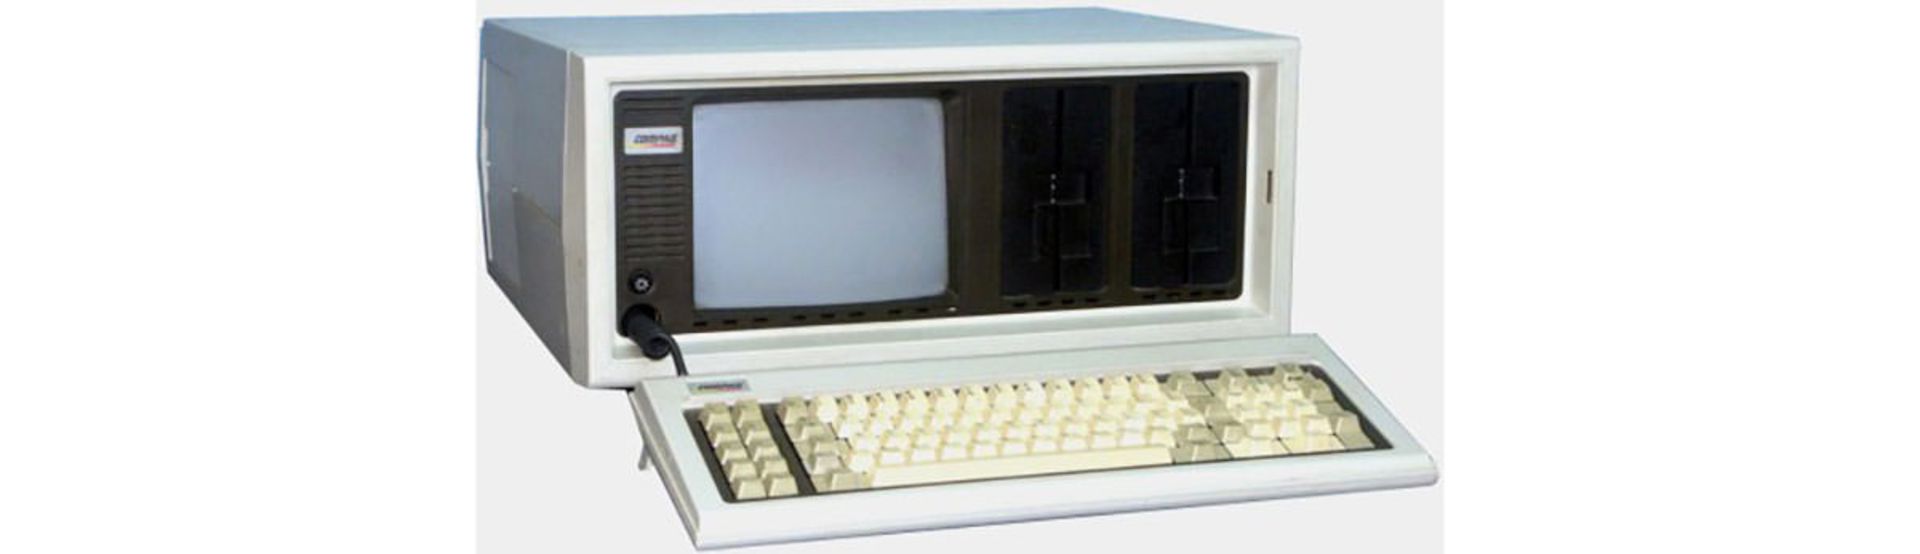 مرجع متخصصين ايران  كامپيوتر كامپك Compaq Portable